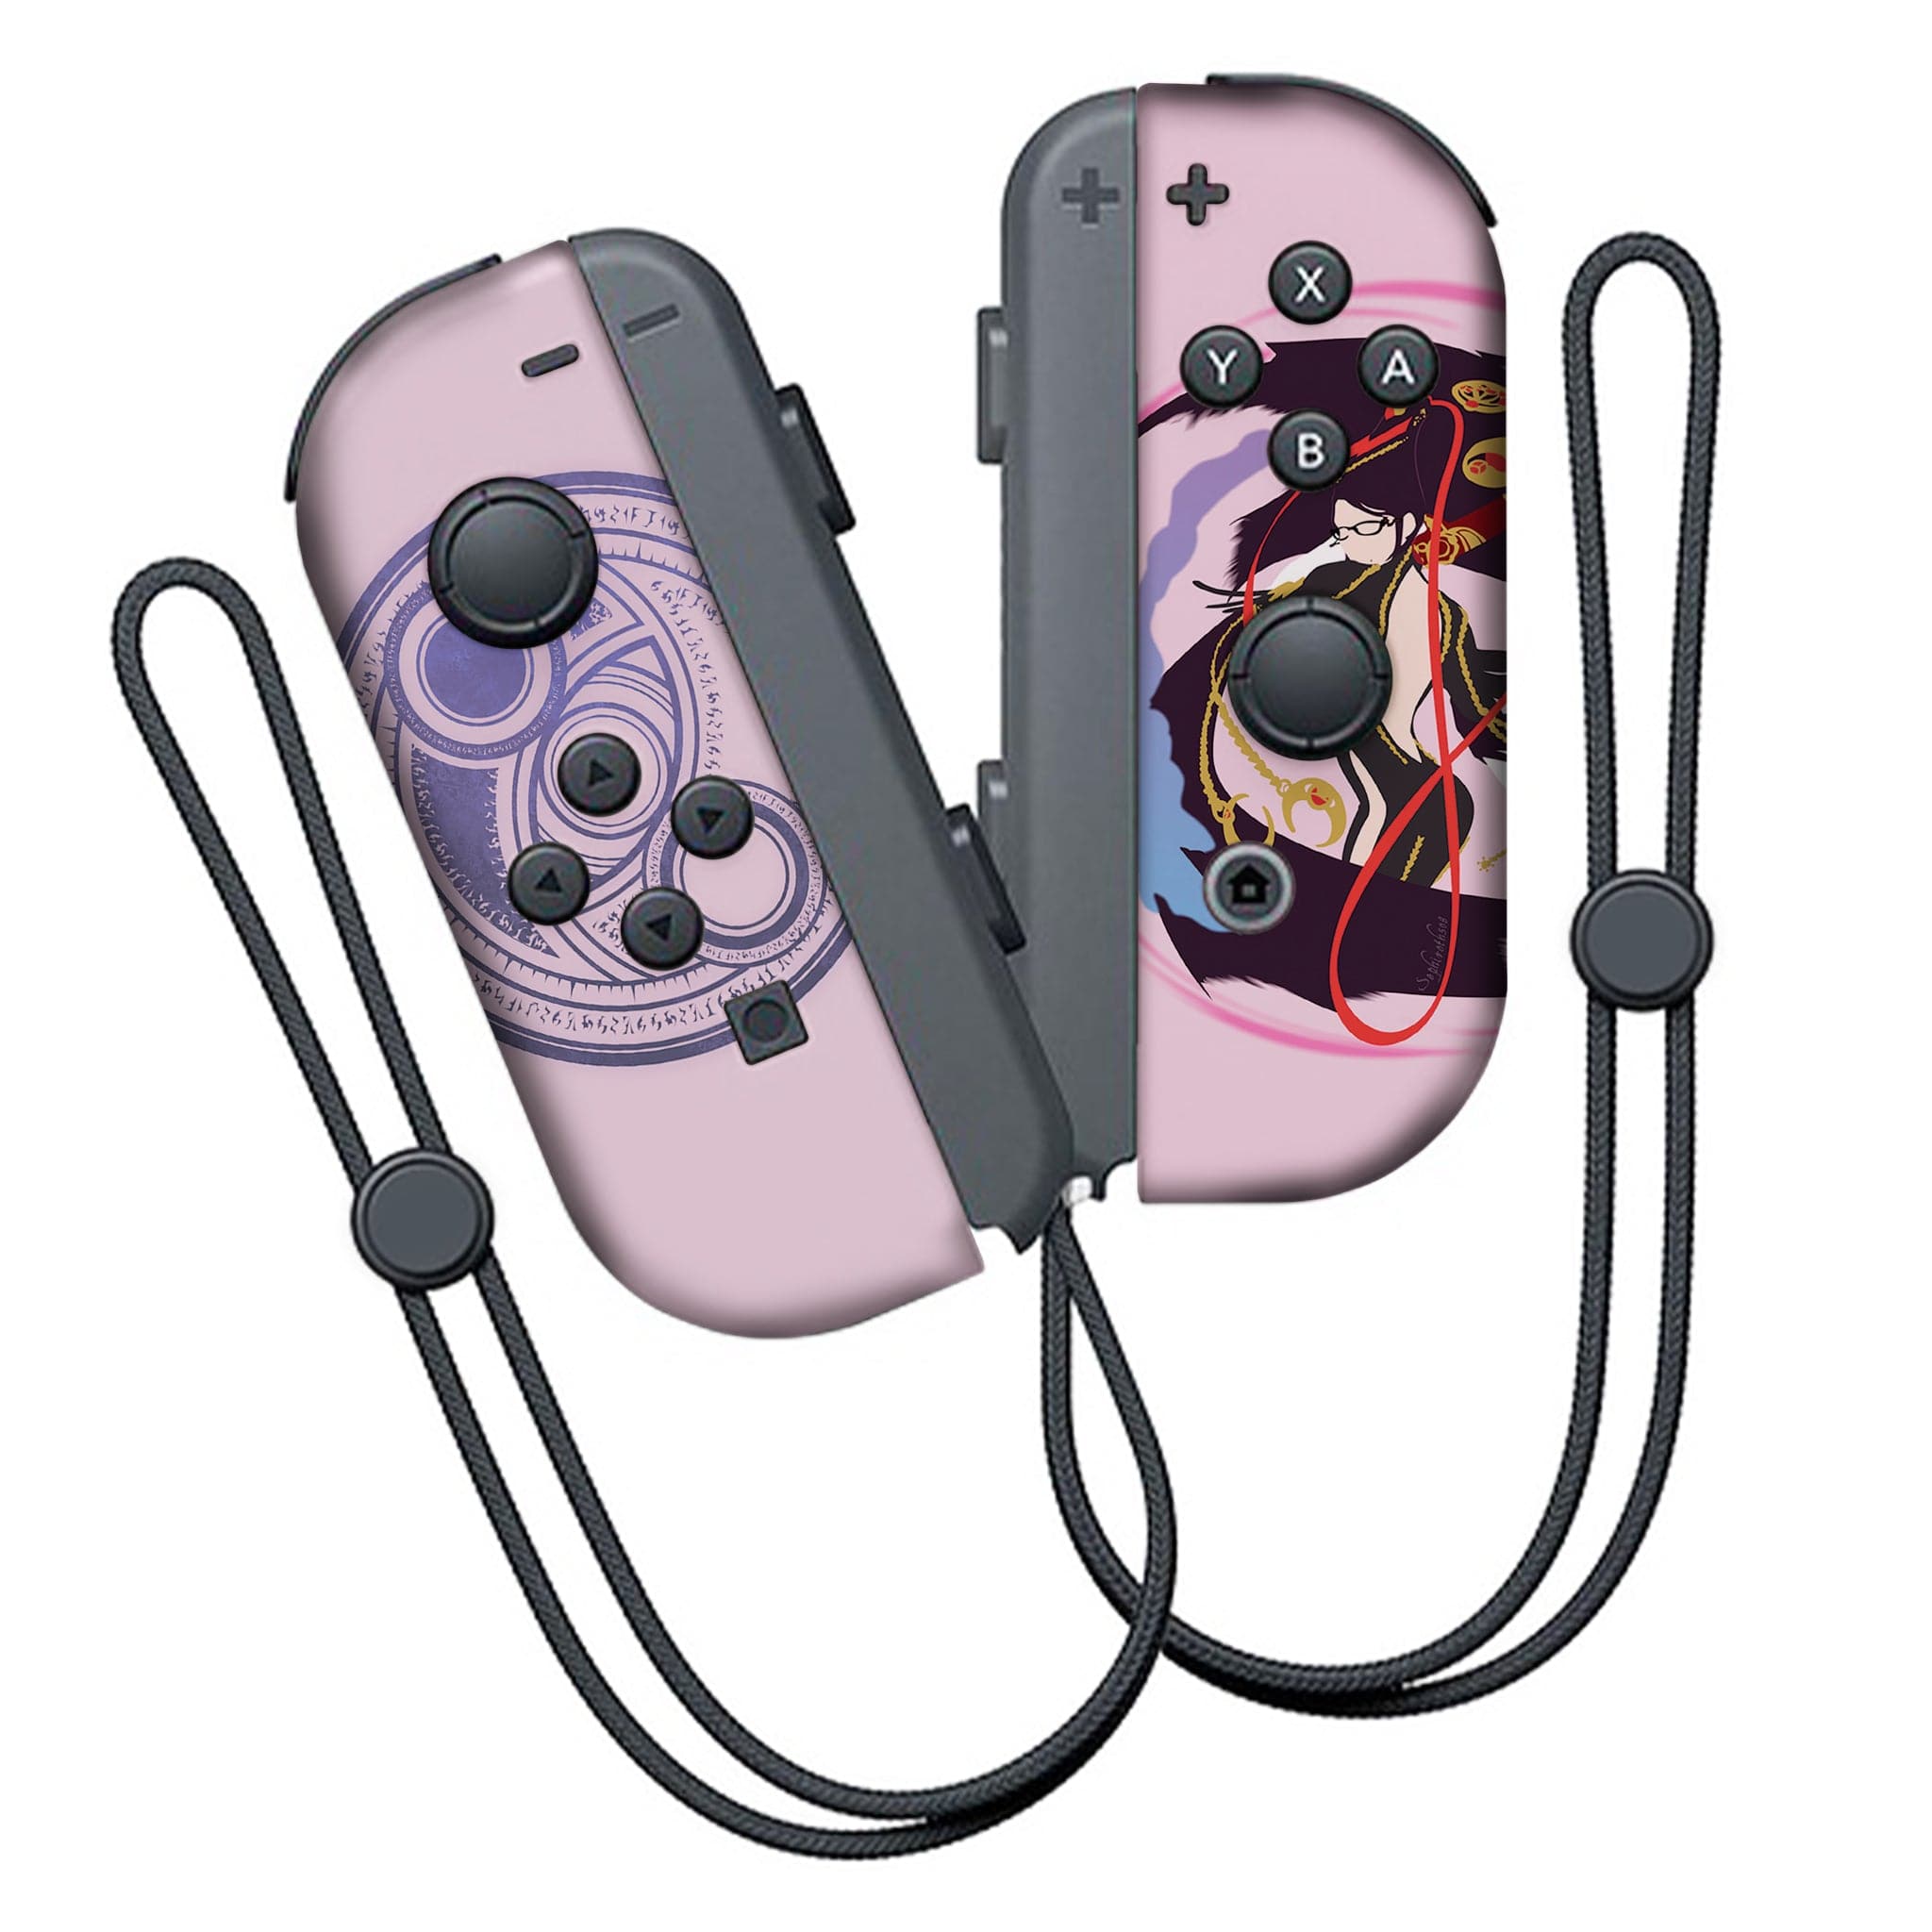 Preços baixos em Bayonetta Nintendo Switch Video Games